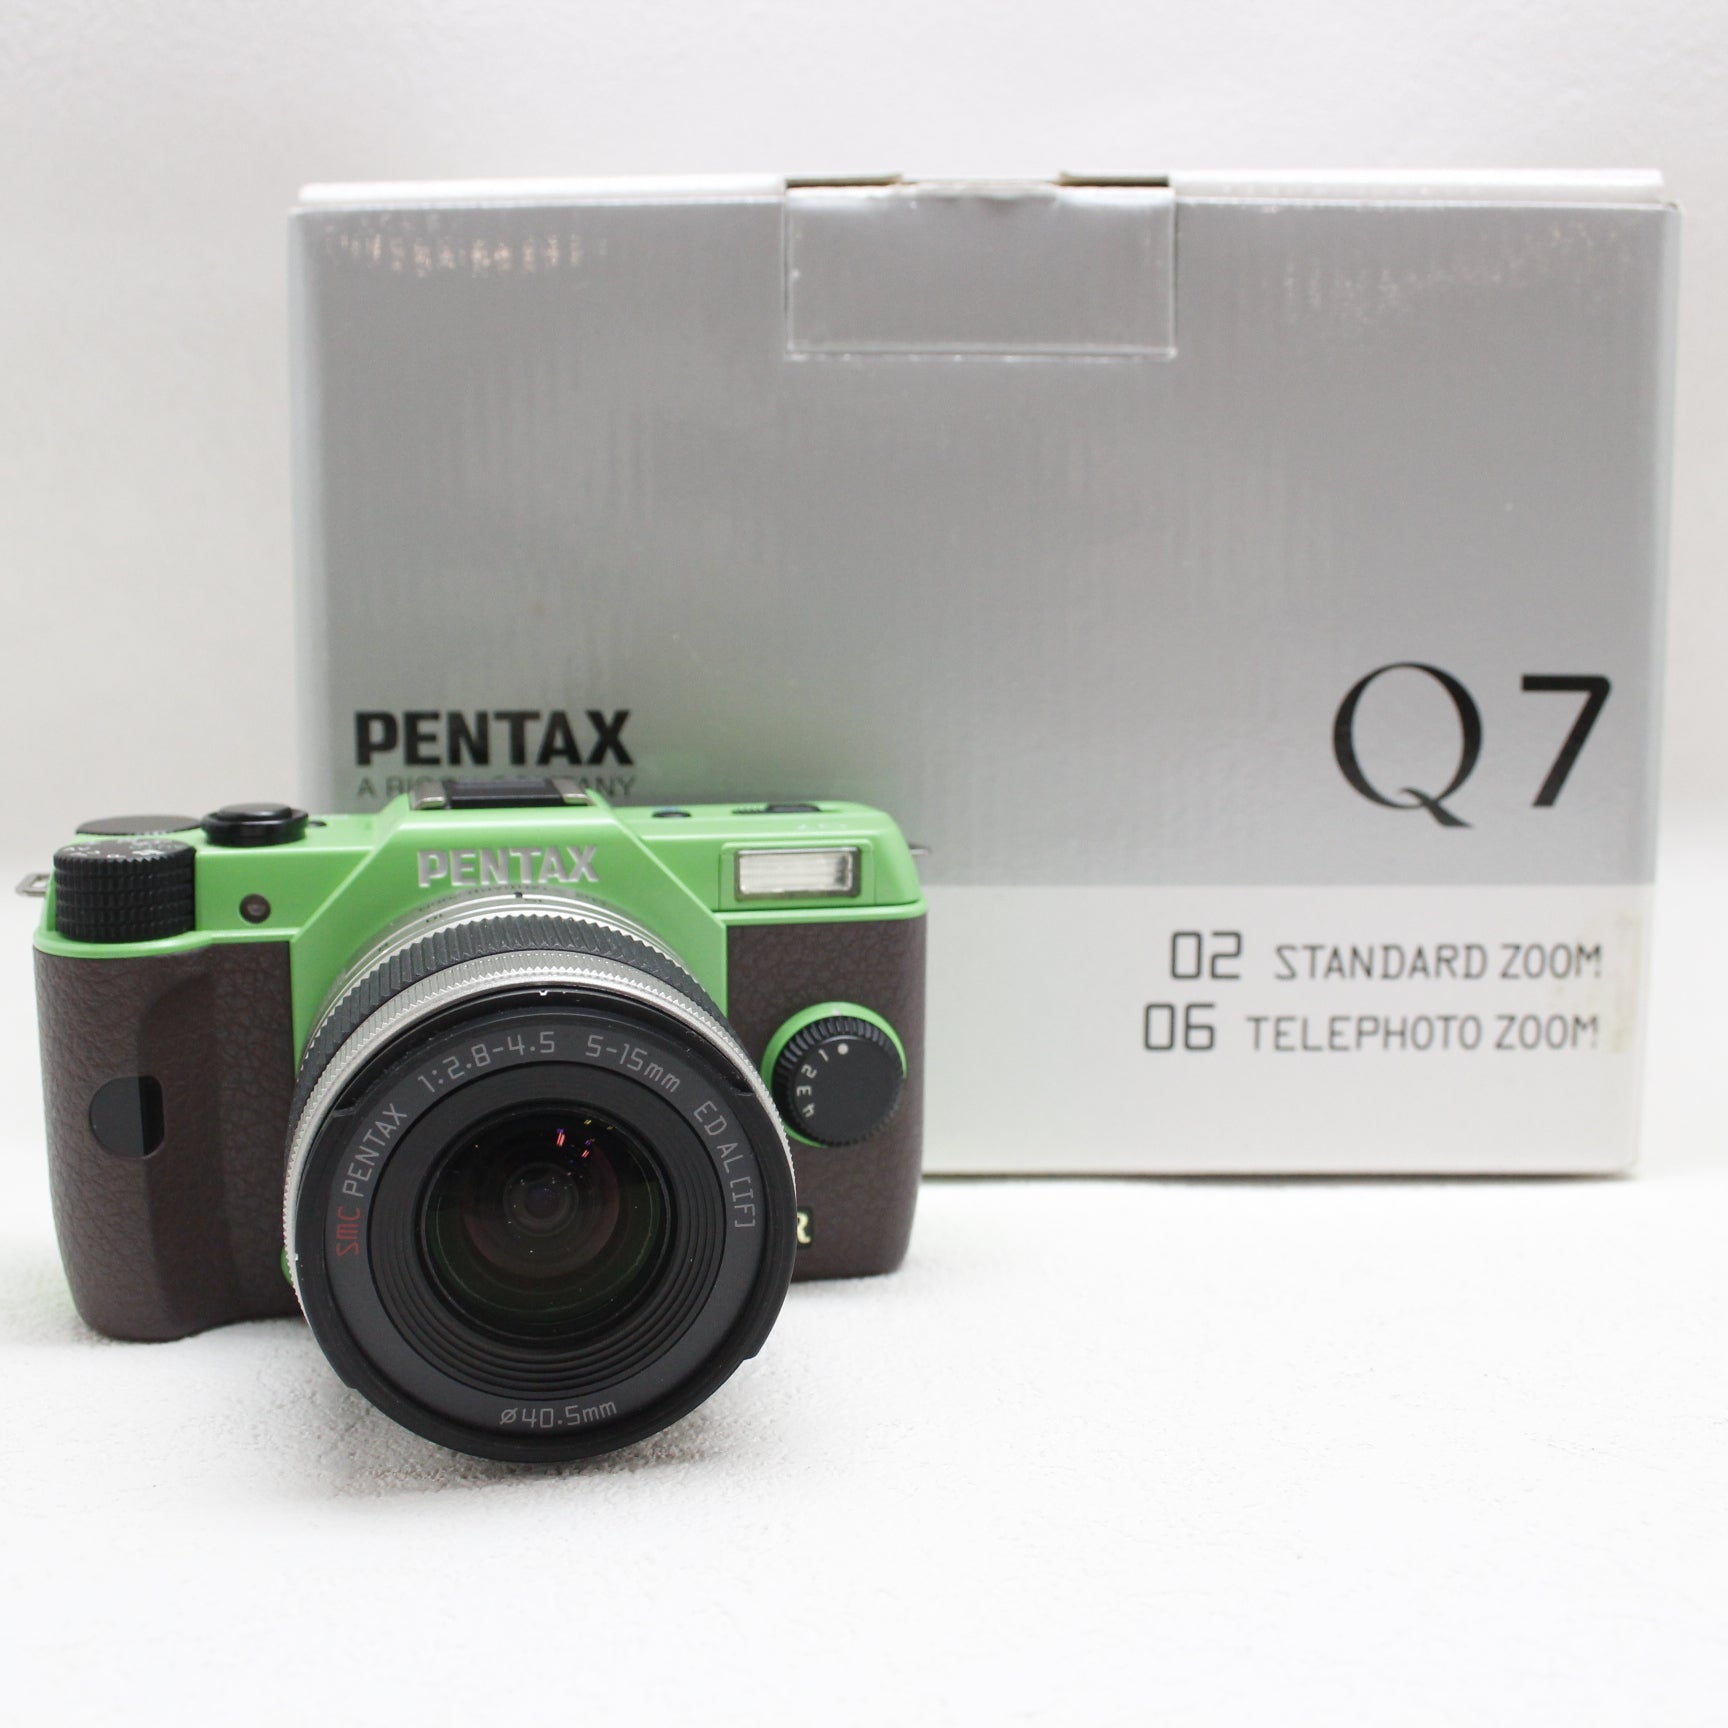 ペンタックス Q7 発売記念 初回限定コンプリートキット + おまけ - カメラ